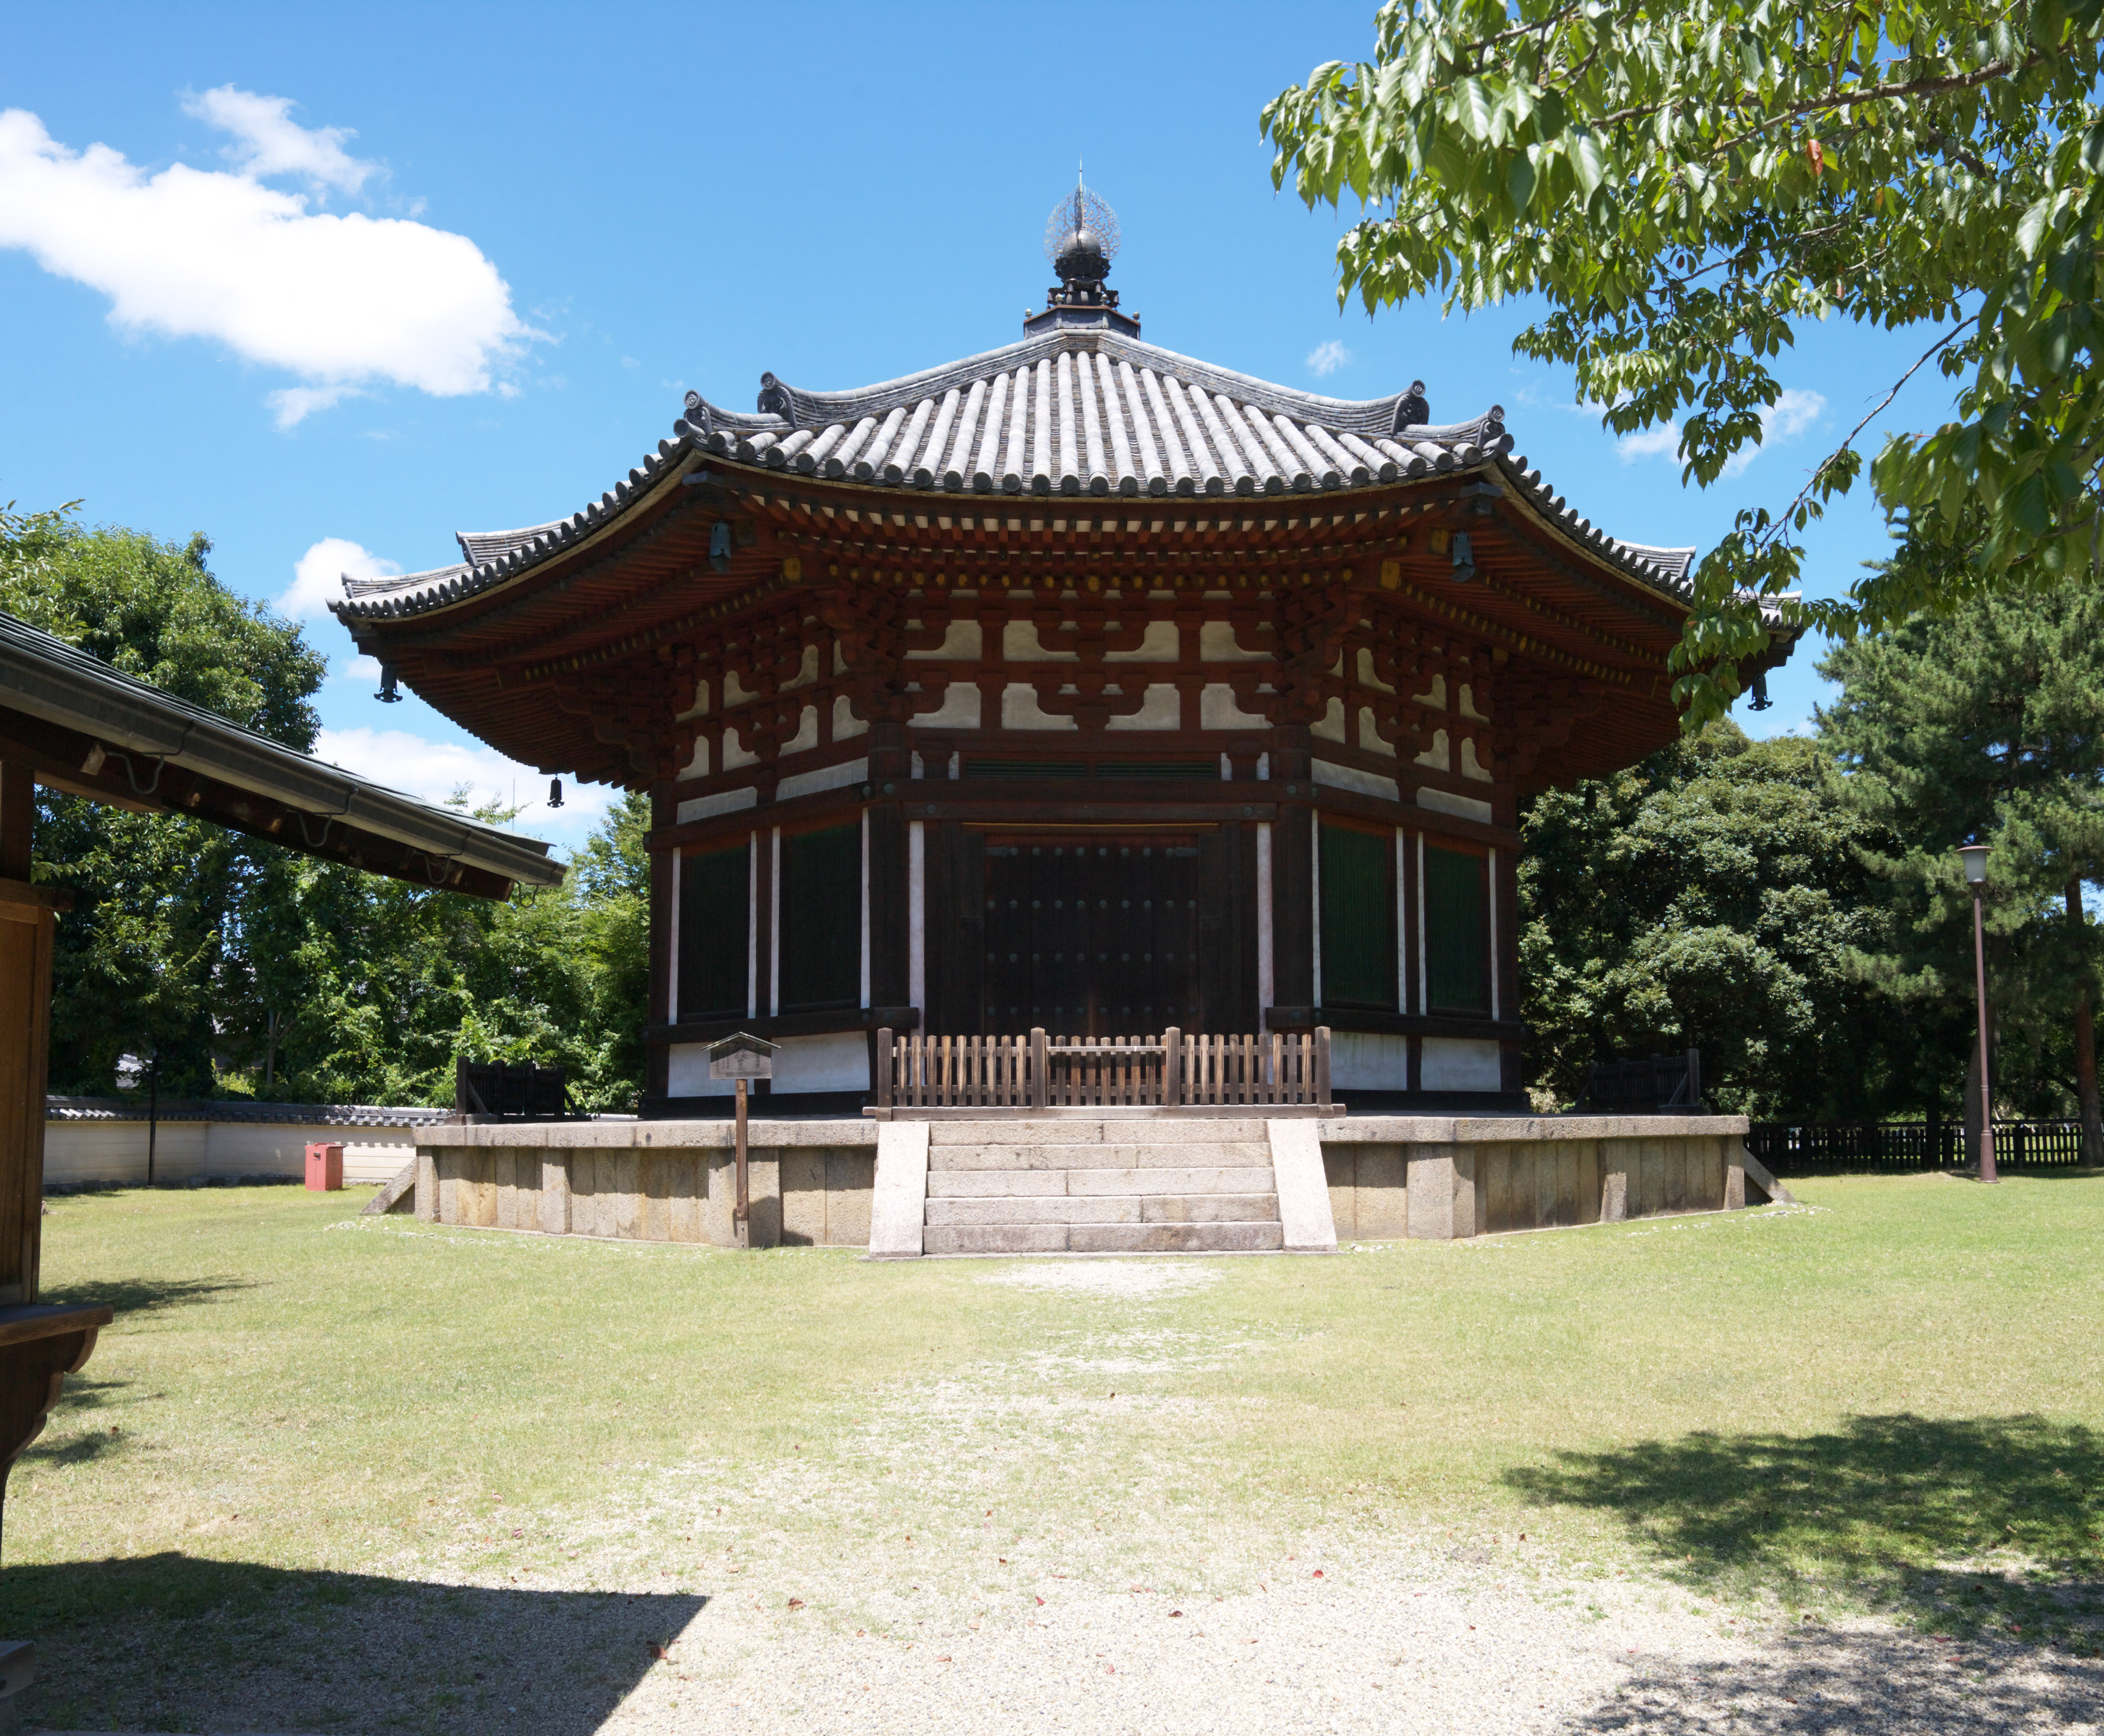 fotografia, material, livra, ajardine, imagine, proveja fotografia,Kofuku-ji Templo norte edifcio hexagonal templo de Togane, Budismo, edifcio de madeira, telhado, herana mundial